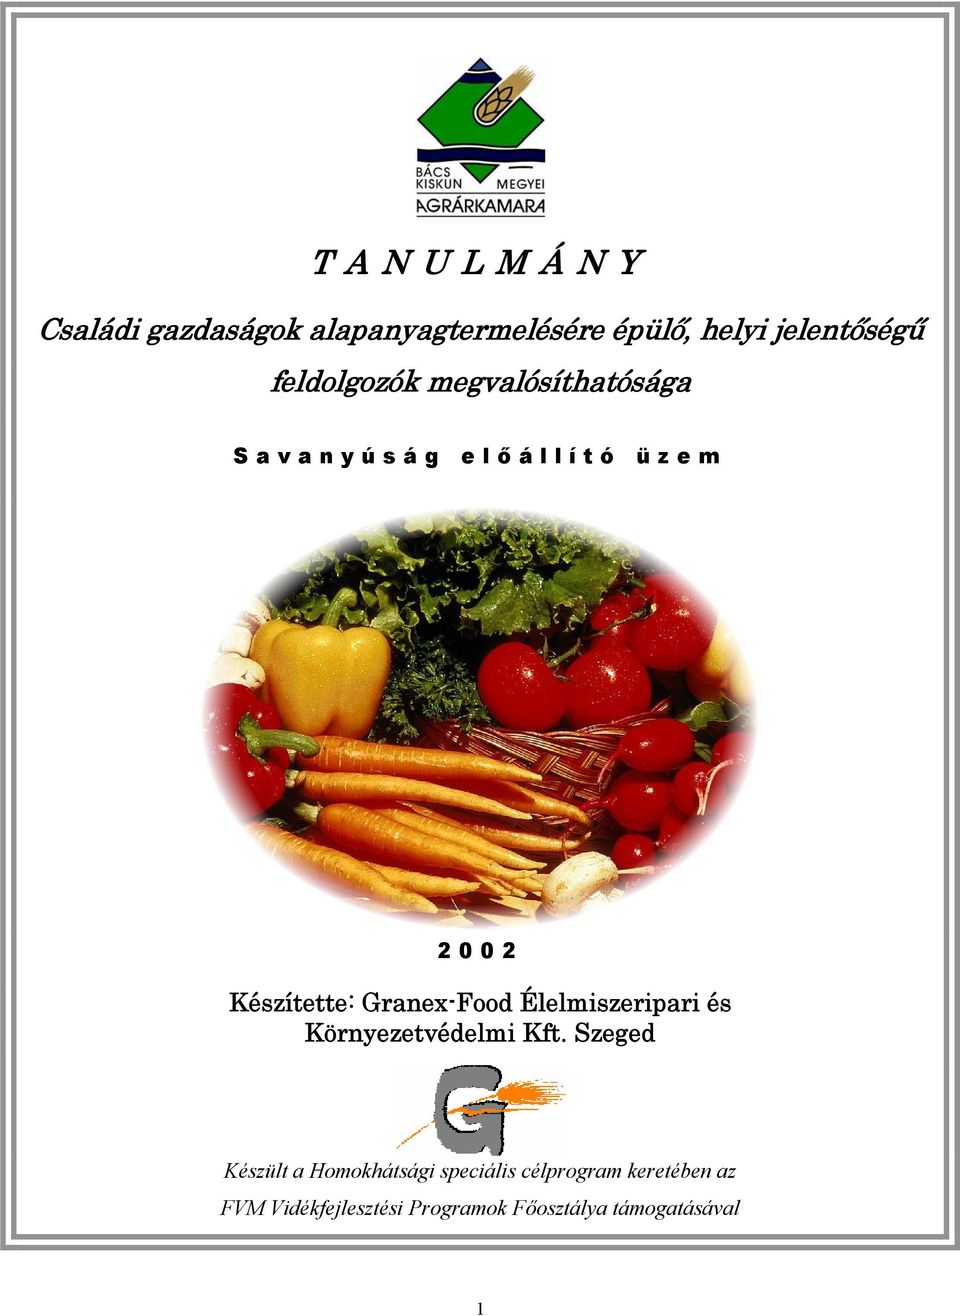 Granex-Food Élelmiszeripari és Környezetvédelmi Kft.